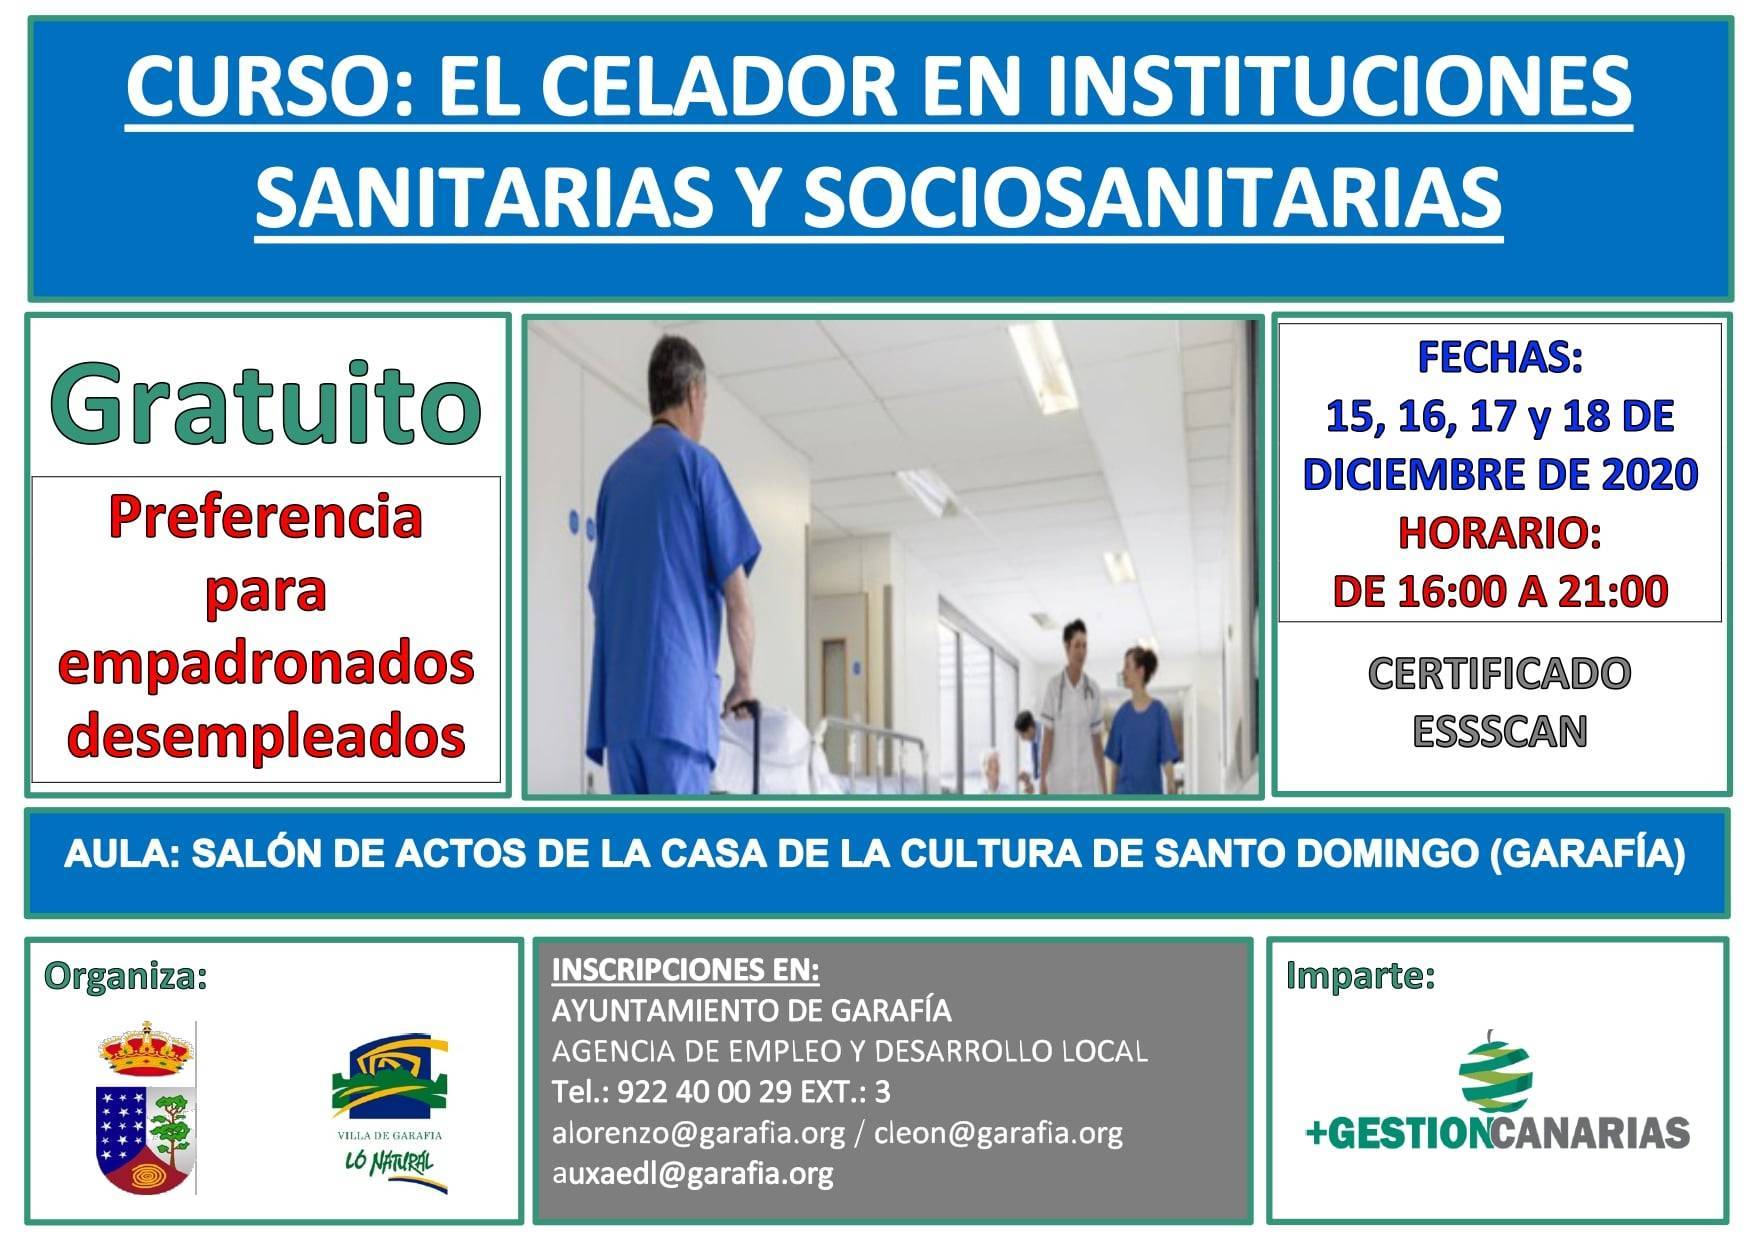 Curso de celador en instituciones sanitarias y sociosanitarias (2020) - Garafía (Santa Cruz de Tenerife)